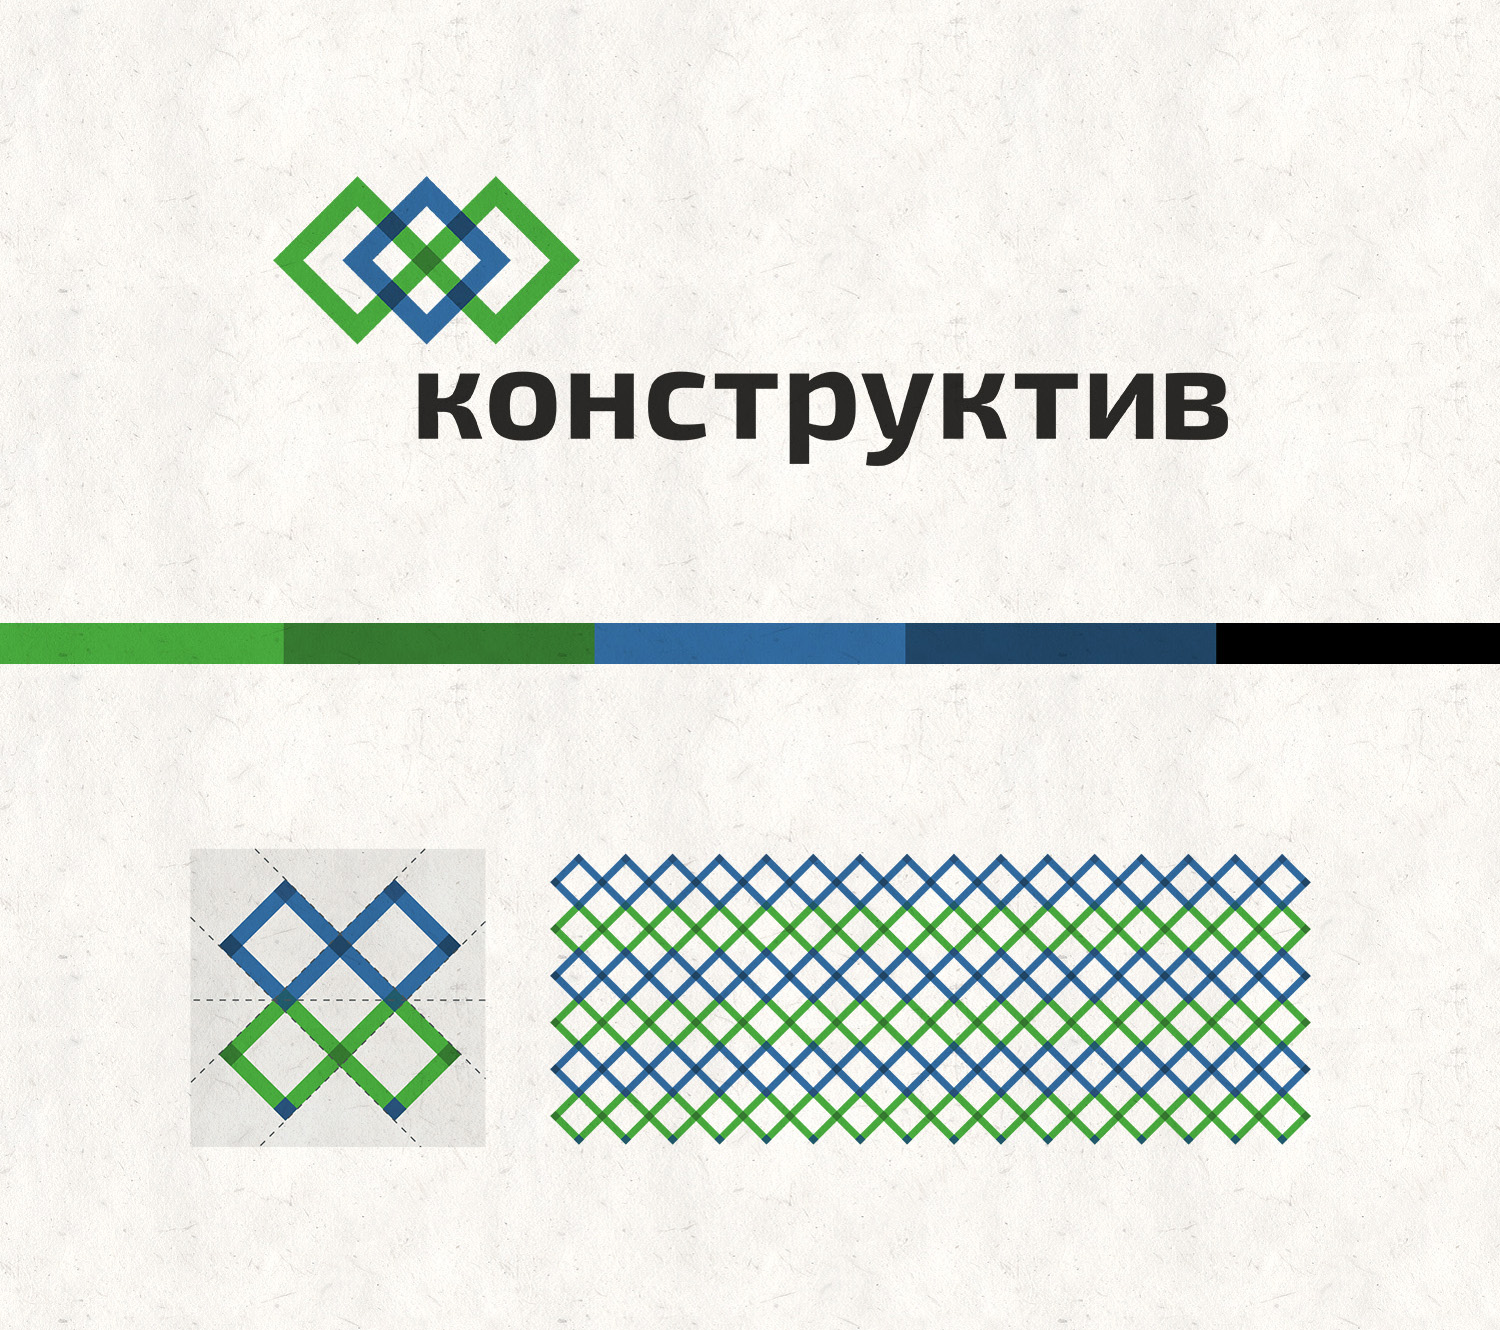 Логотип и паттерн